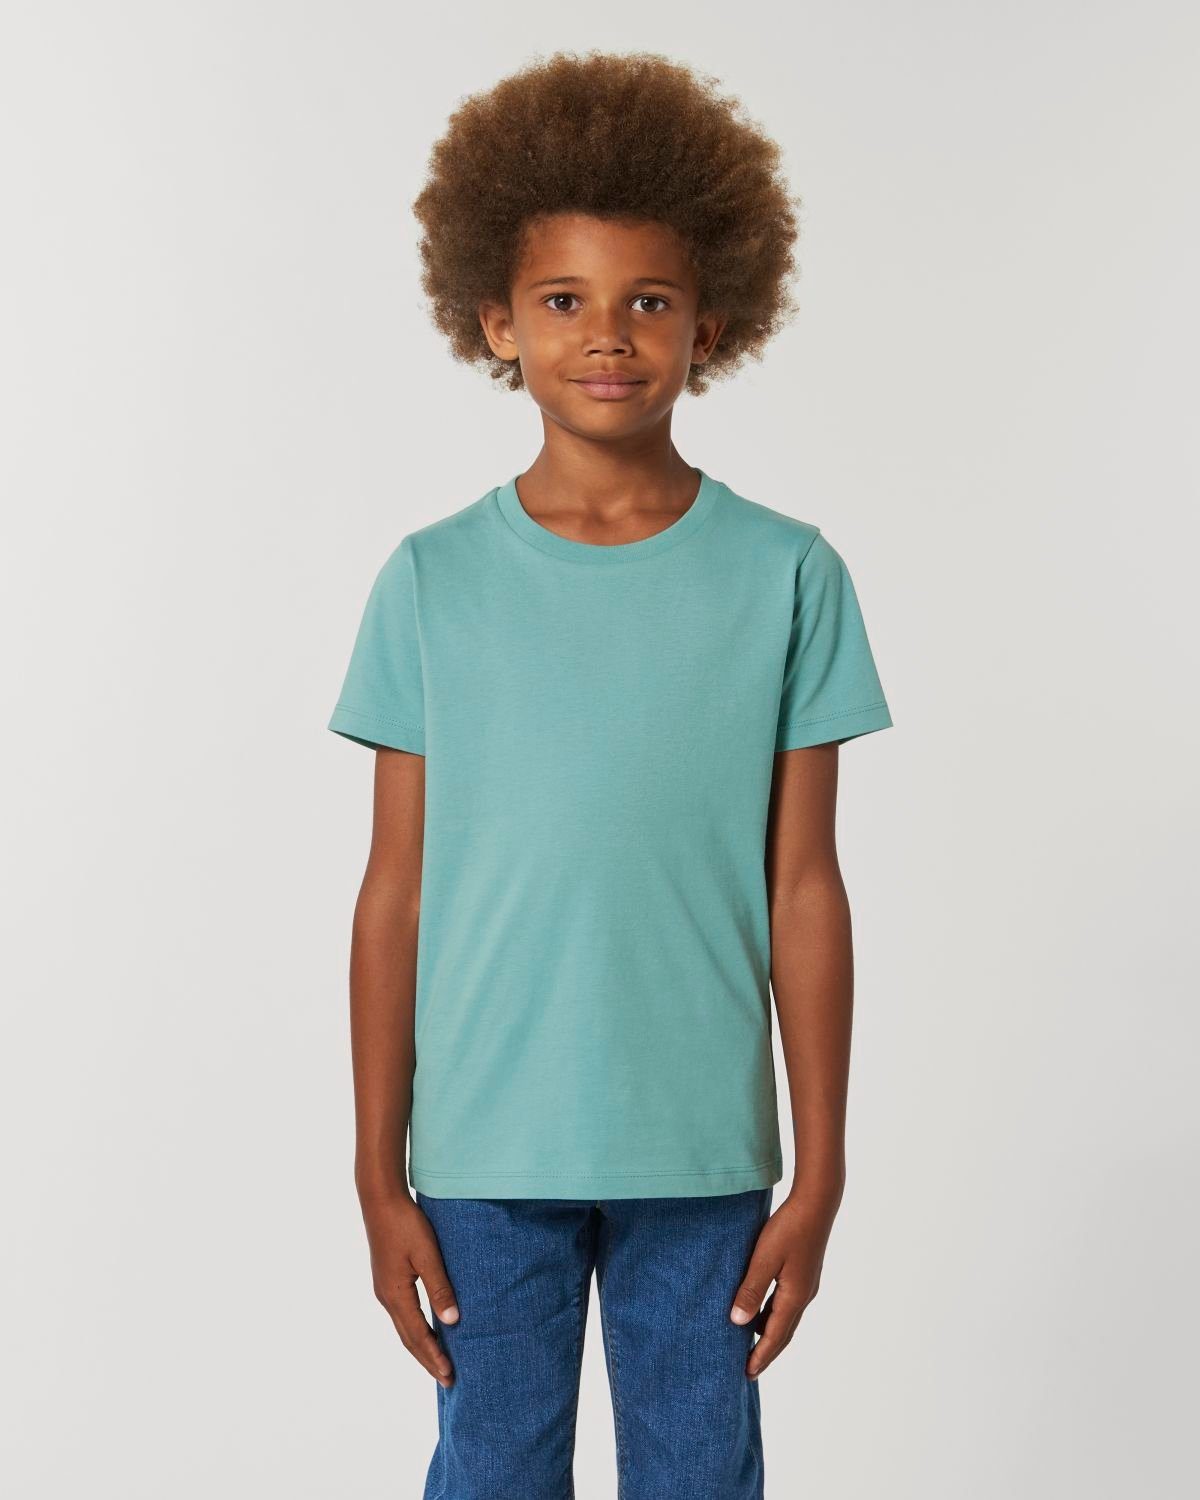 Hilltop T-Shirt Hochwertiges Kinder T-Shirt aus 100% Bio-Baumwolle